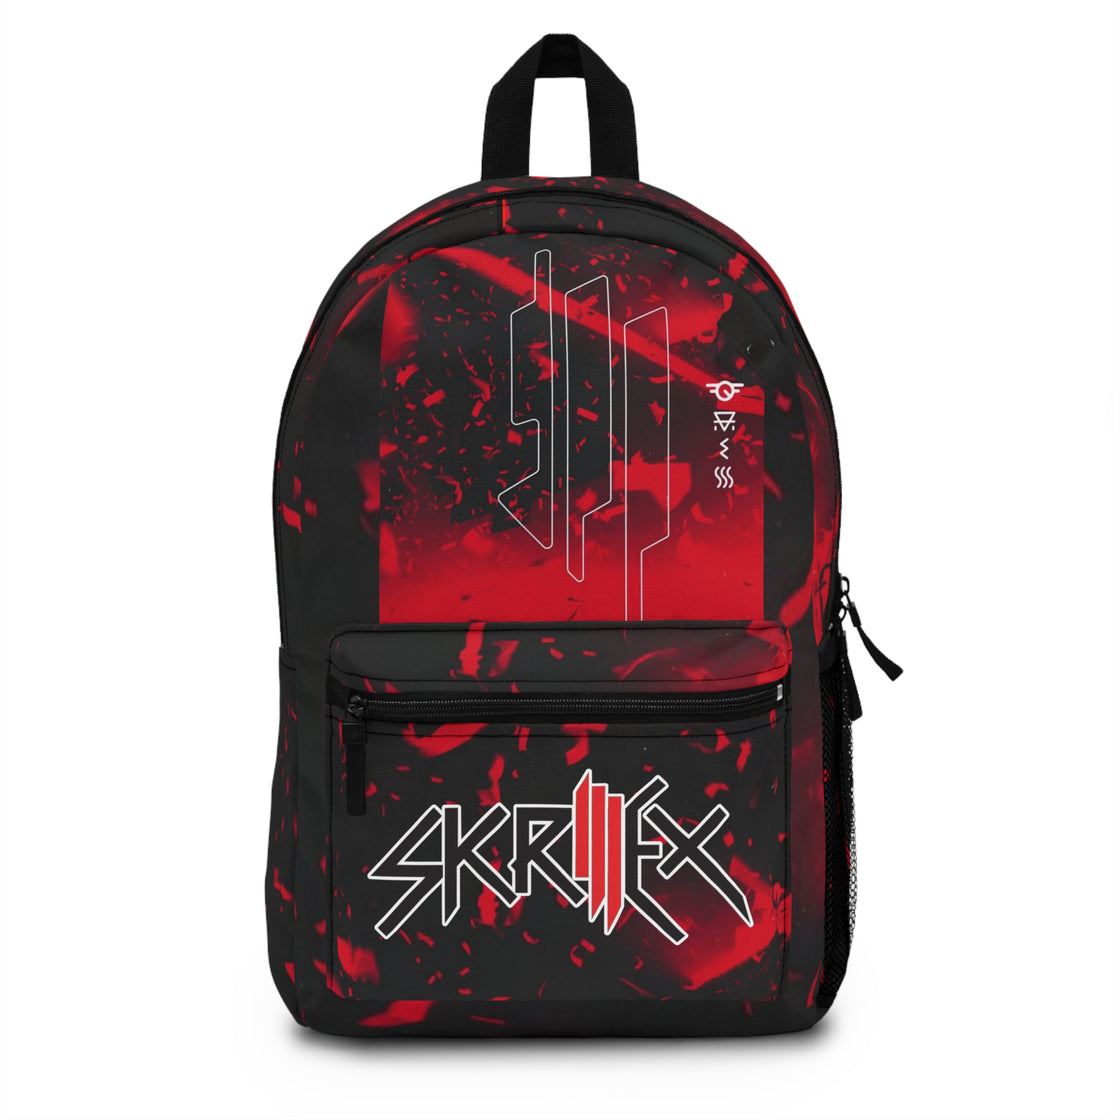 Skrillex Festival Backpack